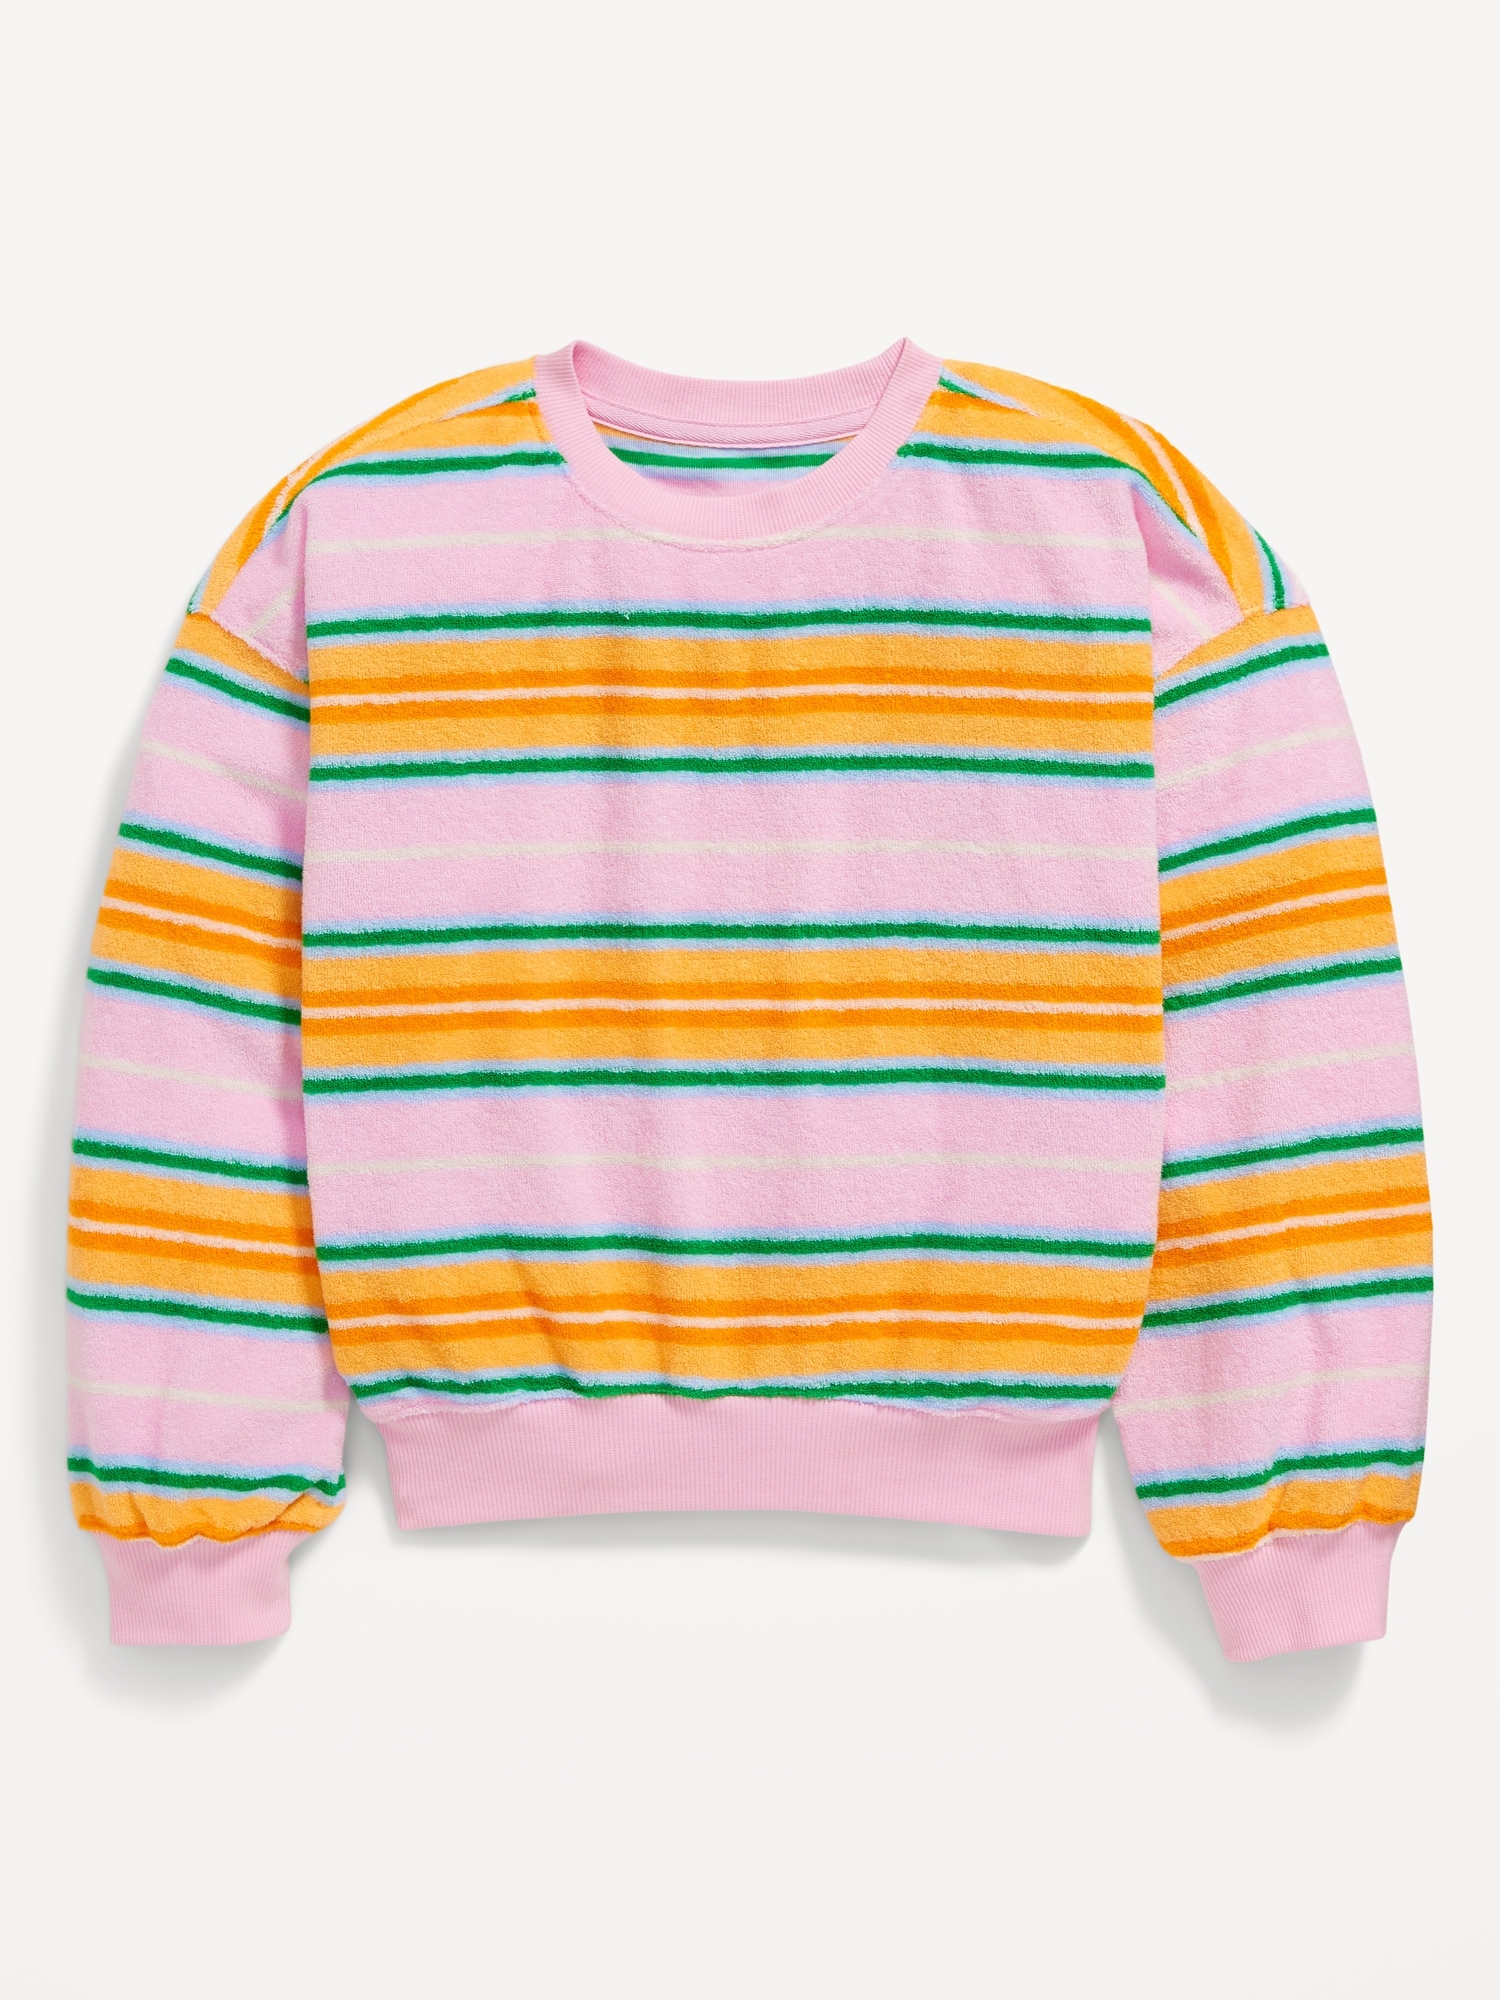 올드네이비 Striped Oversized Drop-Shoulder Sweatshirt for Girls